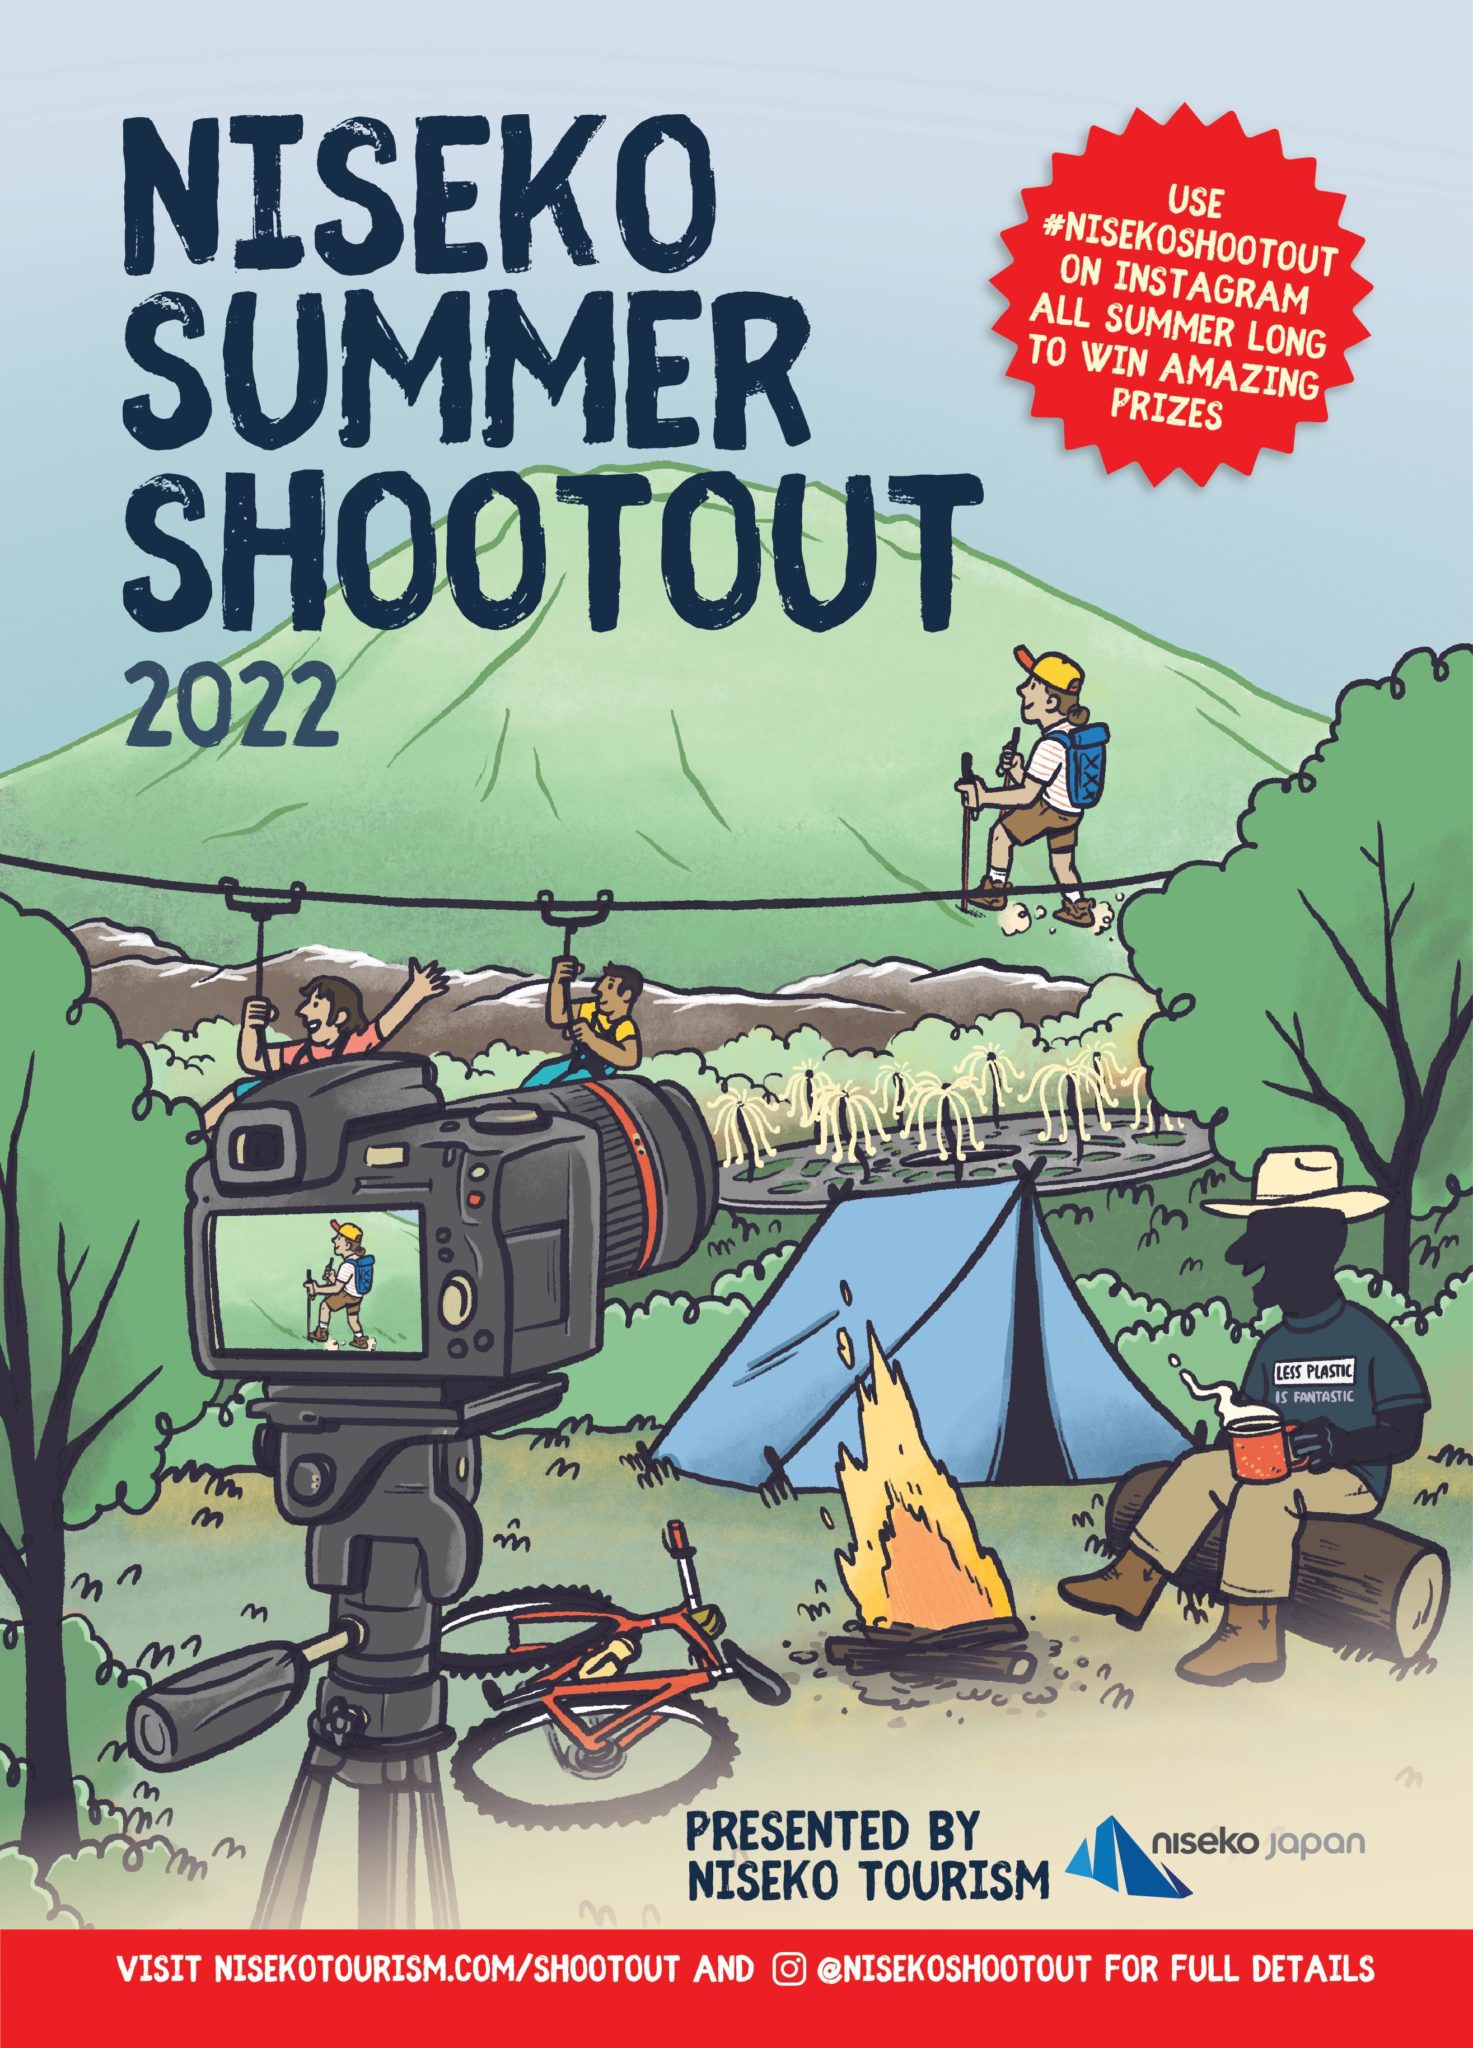 Niseko Shootout Summer 2022